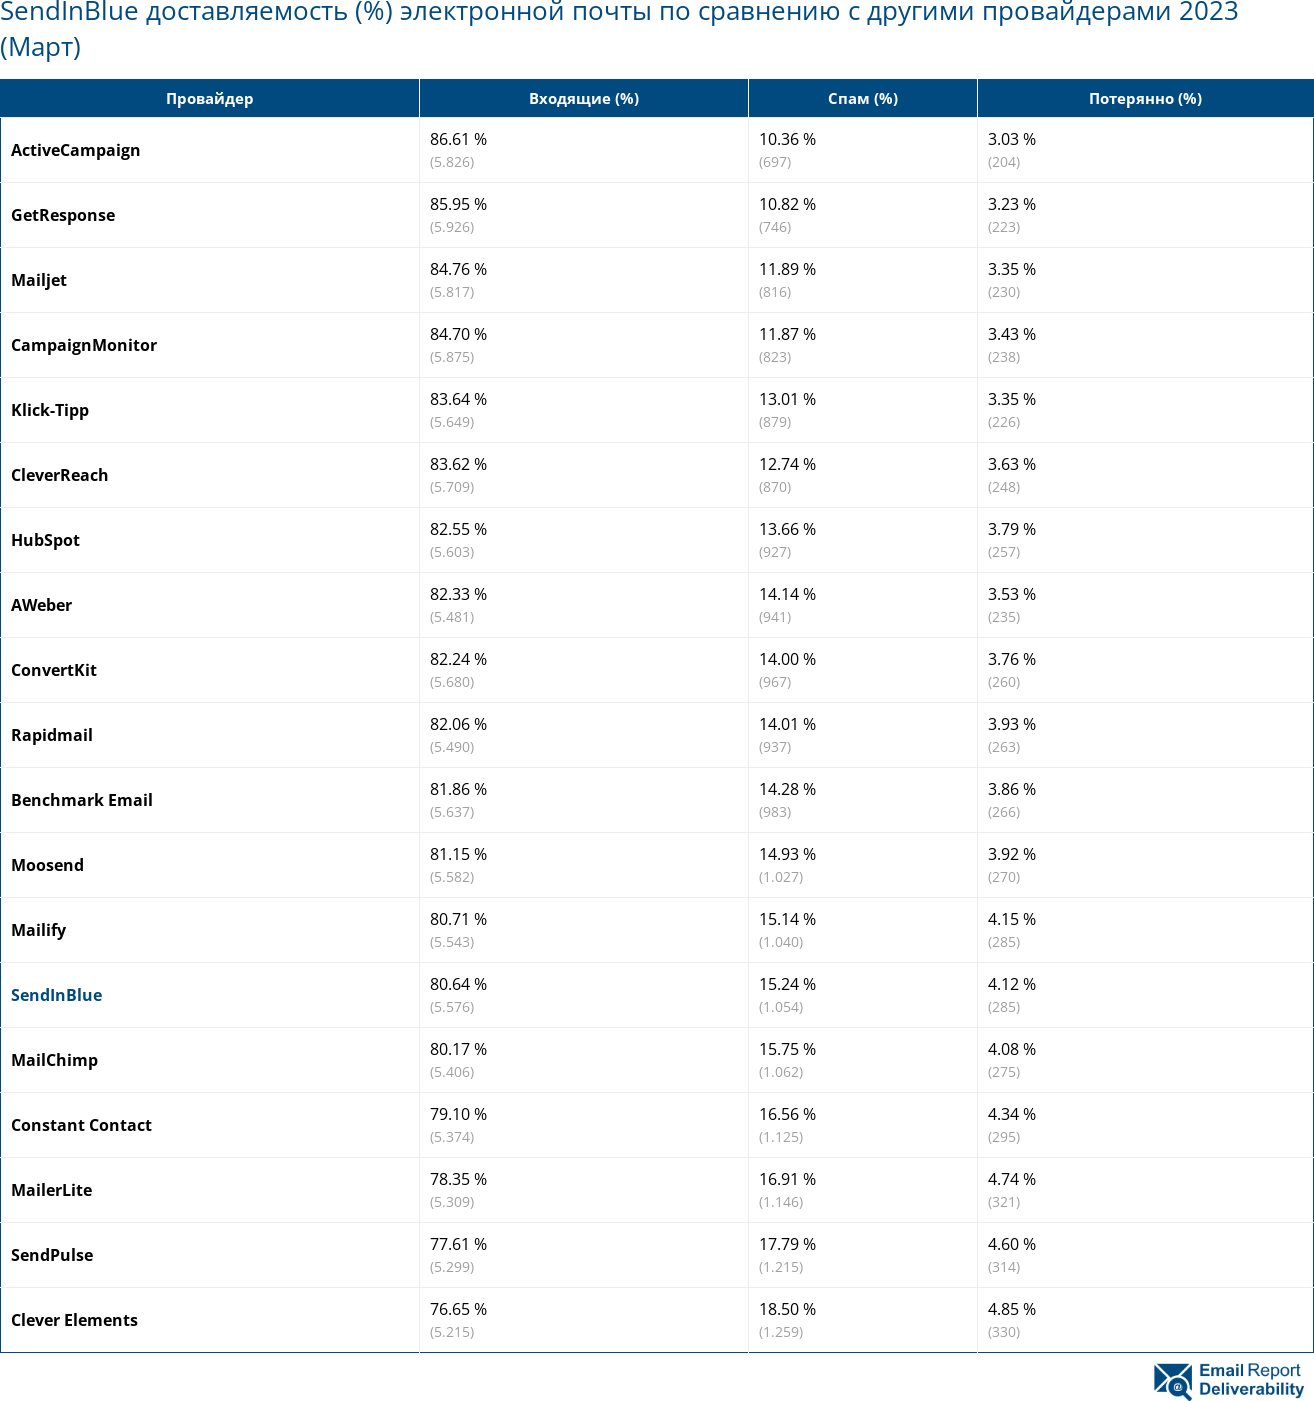 SendInBlue доставляемость (%) электронной почты по сравнению с другими провайдерами 2023 (Март)